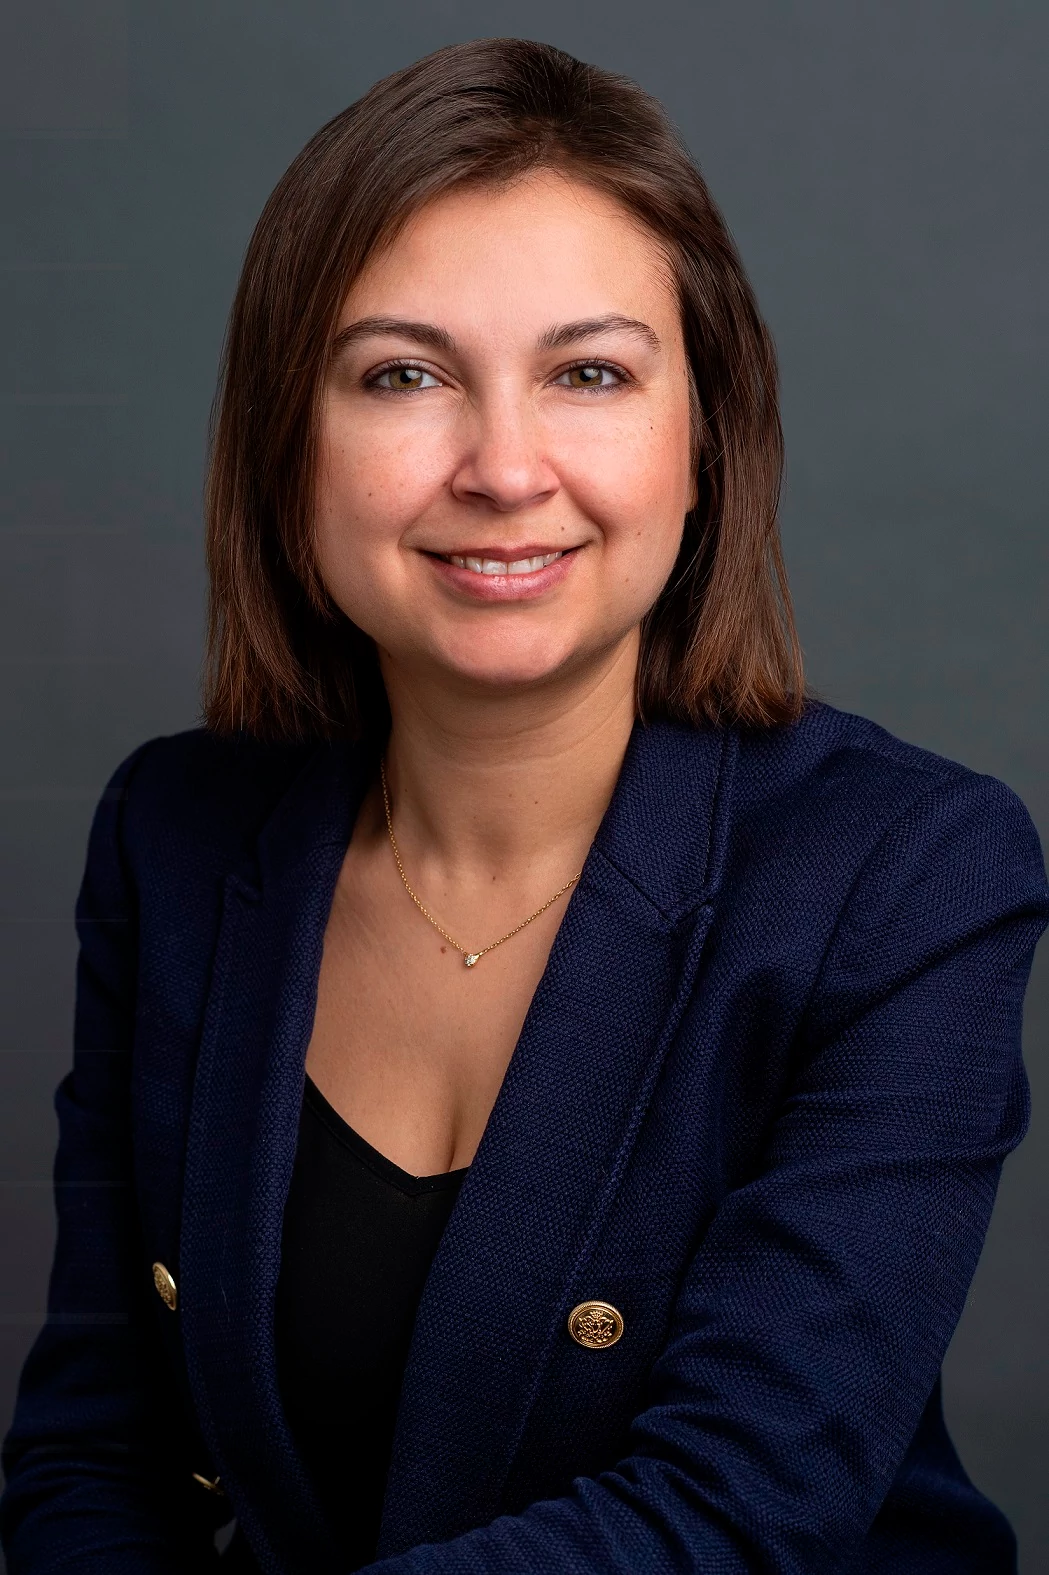 Blerina Uruci, Chief US Economist at T. Rowe Price